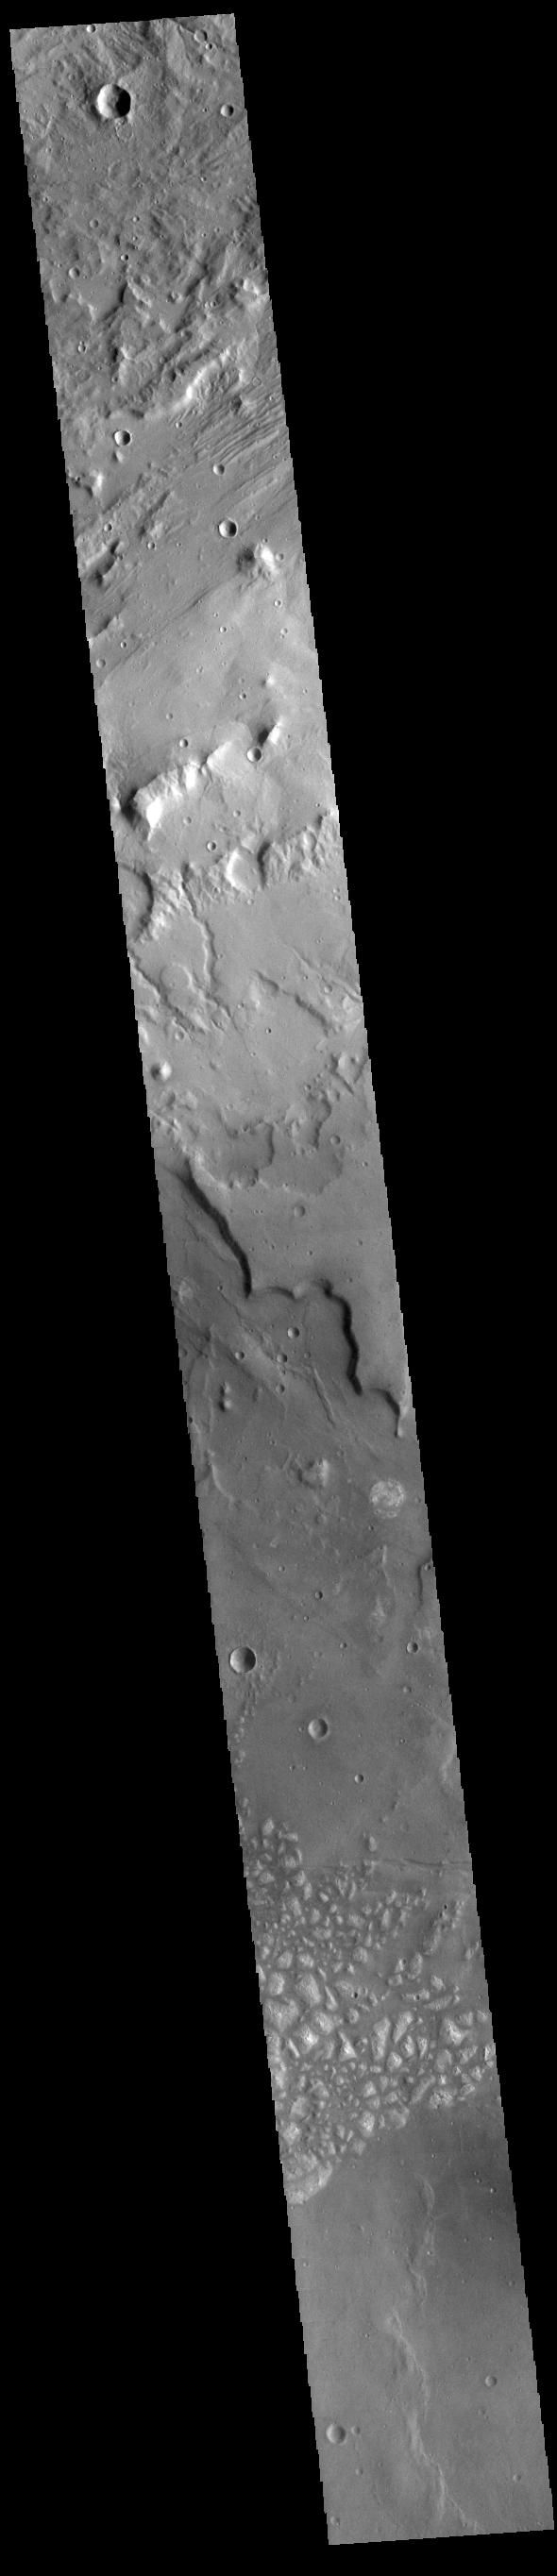 PIA24004: Terra Cimmeria